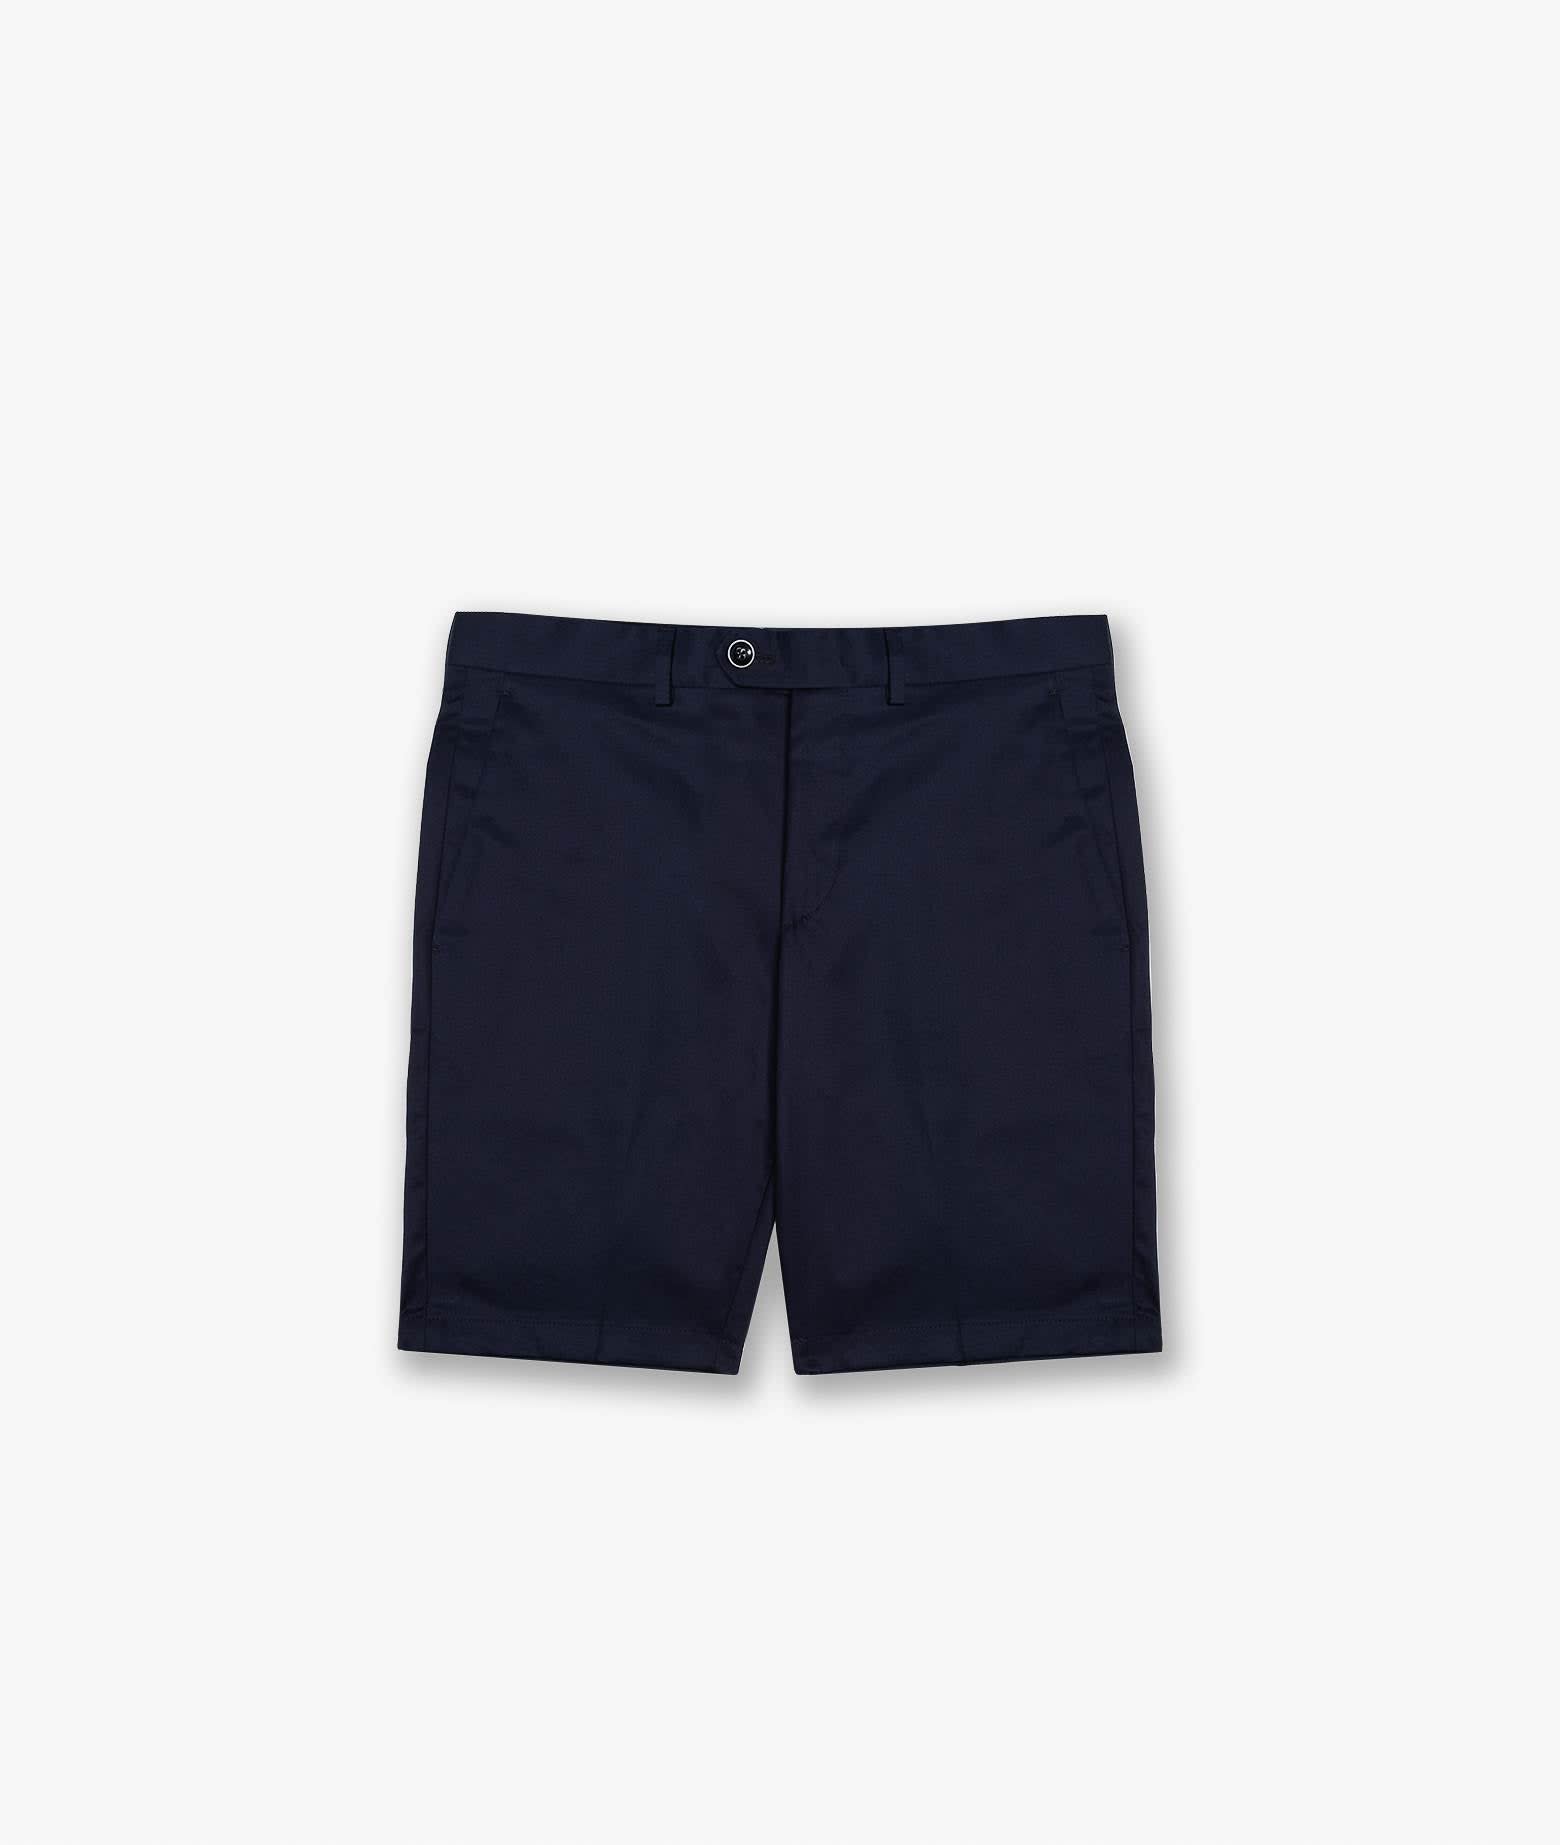 Bermuda Short poltu Quatu Shorts